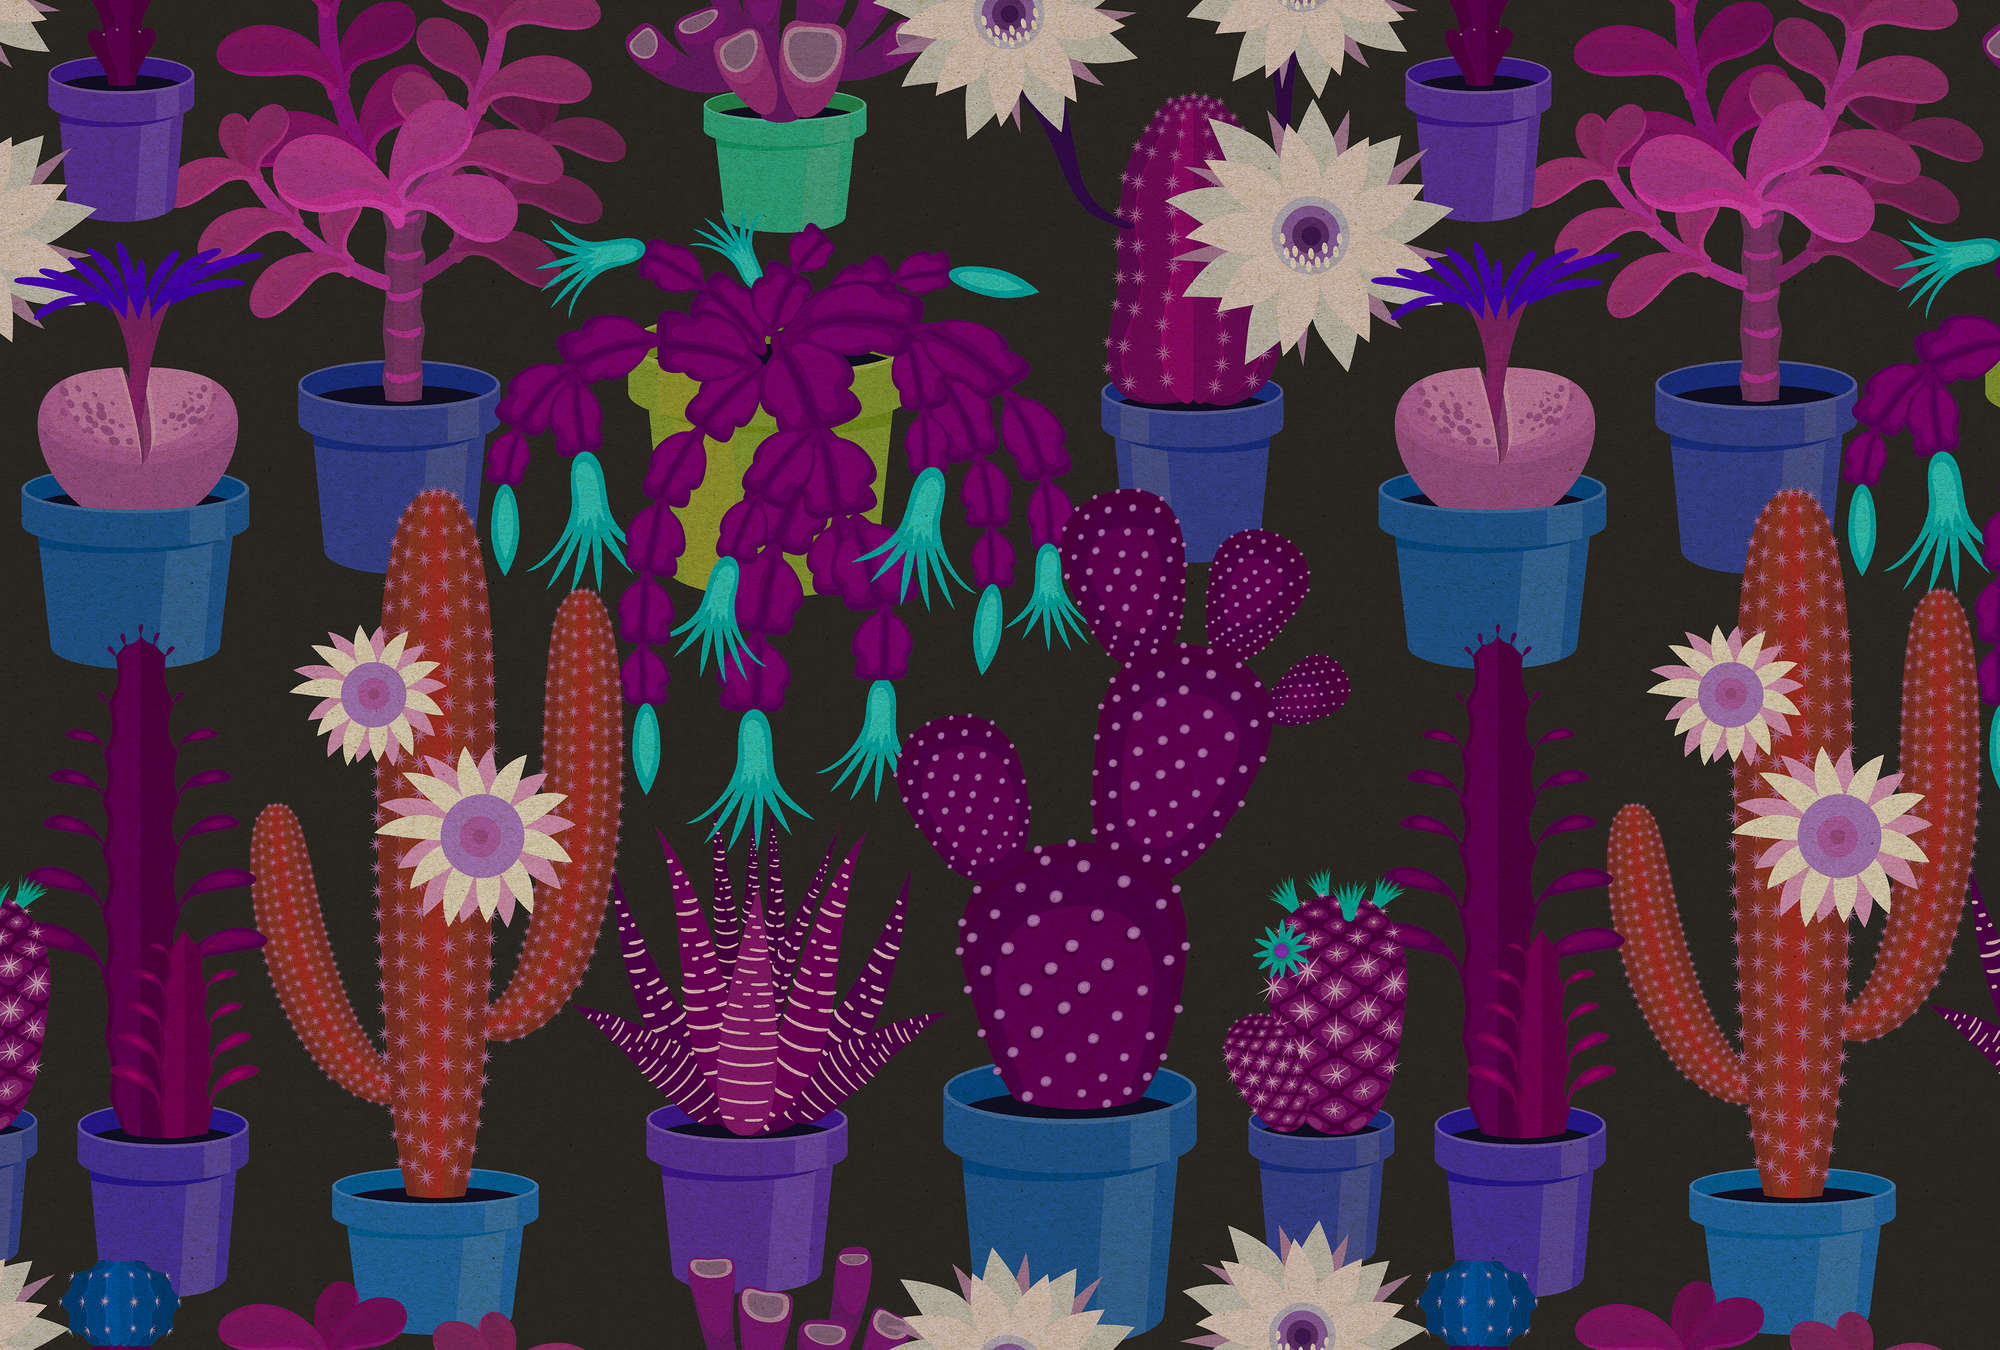             Jardín de cactus 1 - papel pintado en estructura de cartón con cactus de colores en estilo cómic - azul, naranja | vellón liso nacarado
        